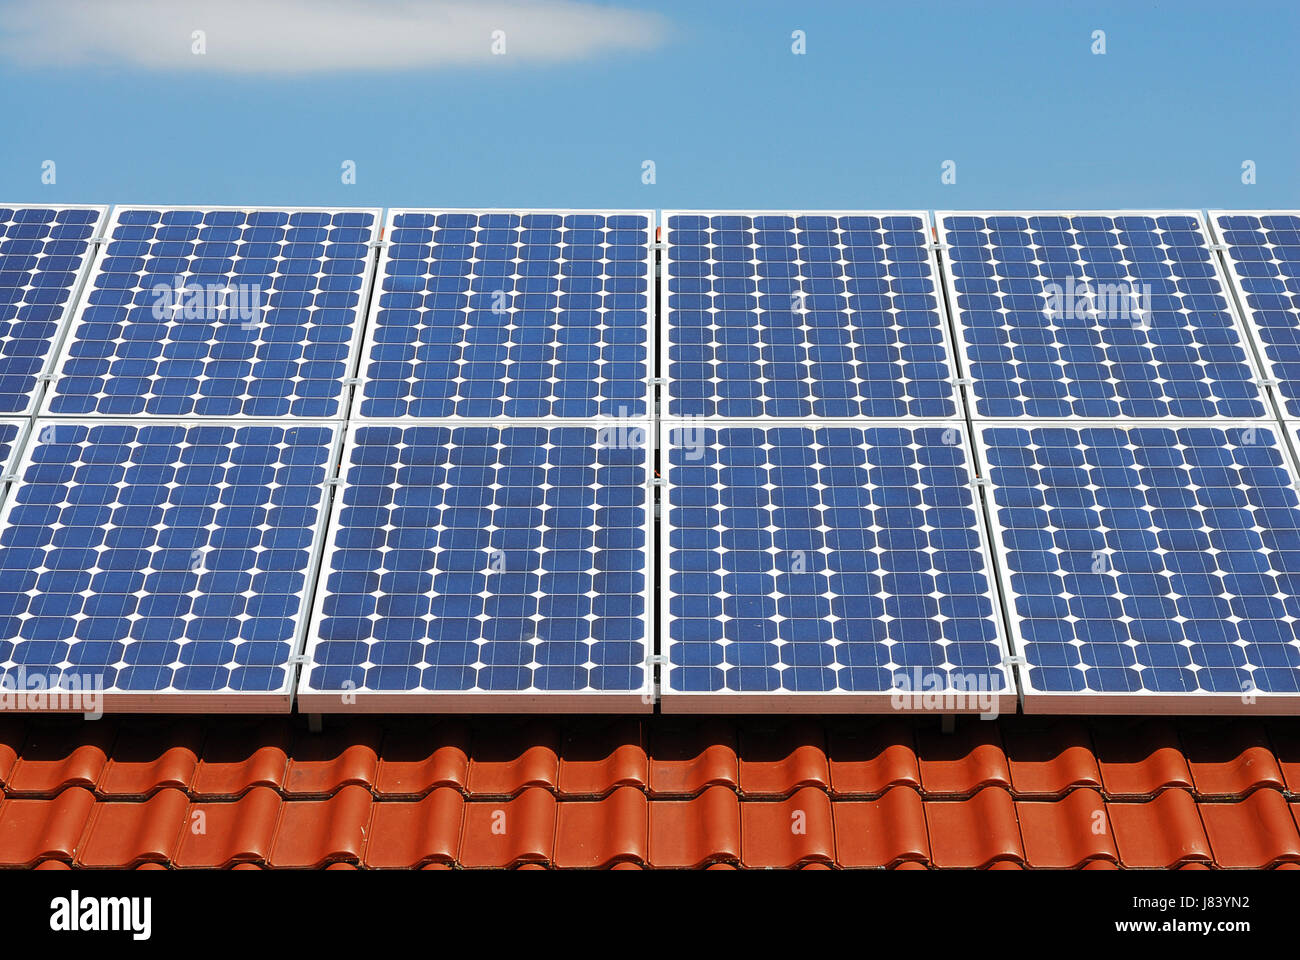 Avenir de l'énergie solaire photovoltaïque les cellules solaires photovoltaïques nettoyage shine brille Banque D'Images